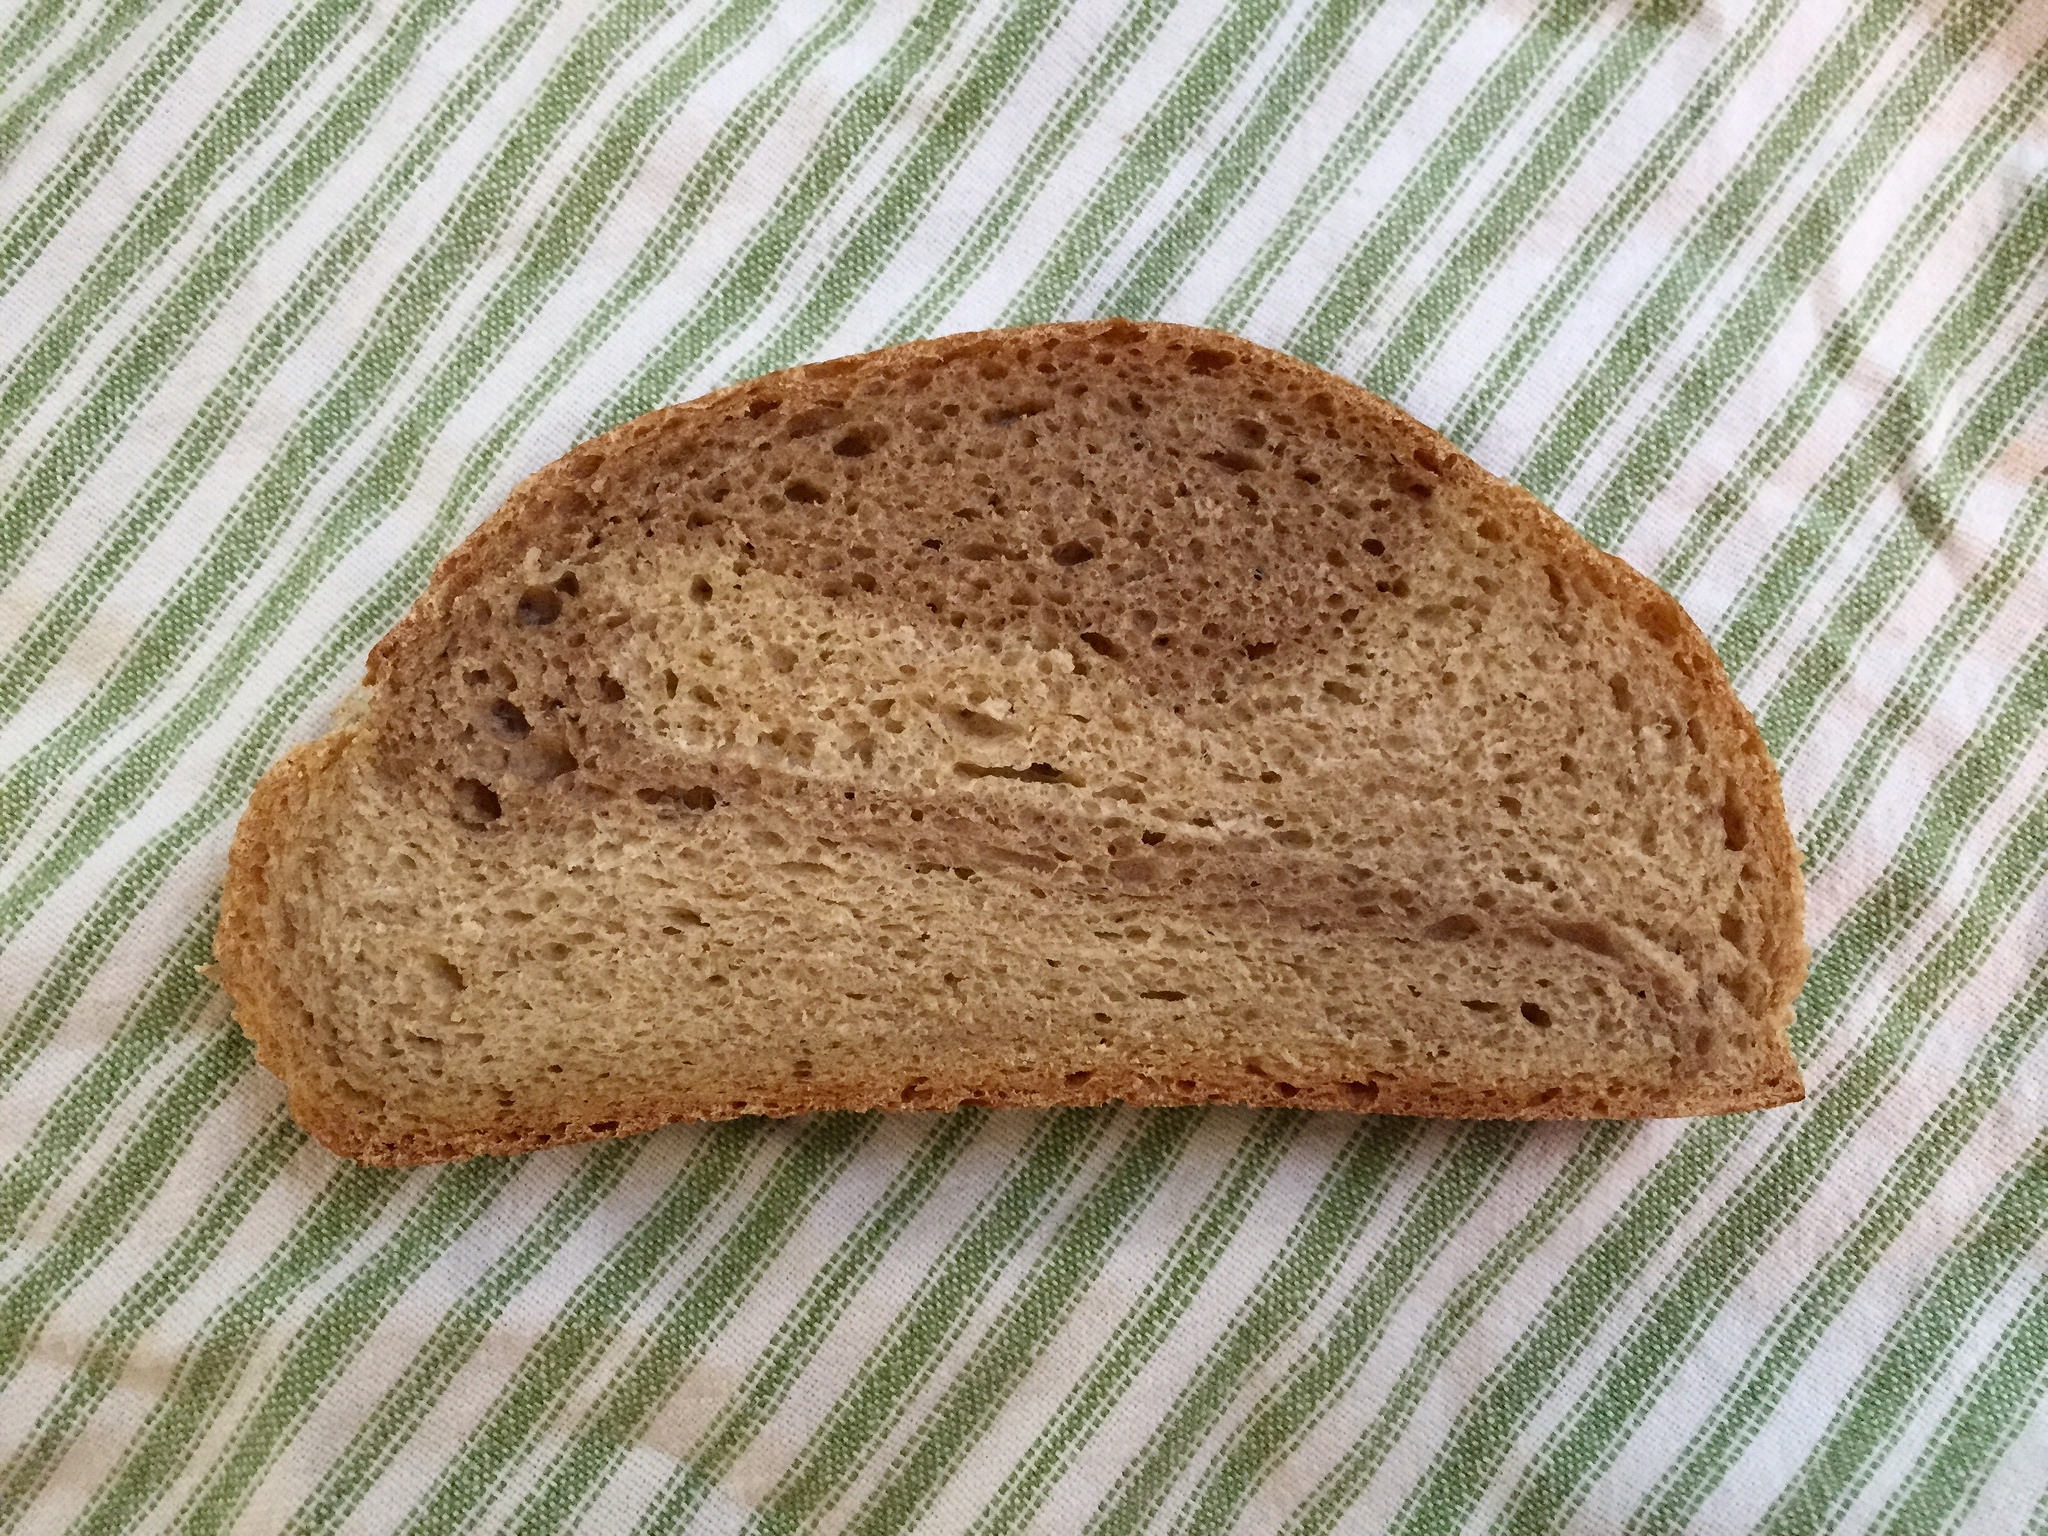 marble rye bread slice